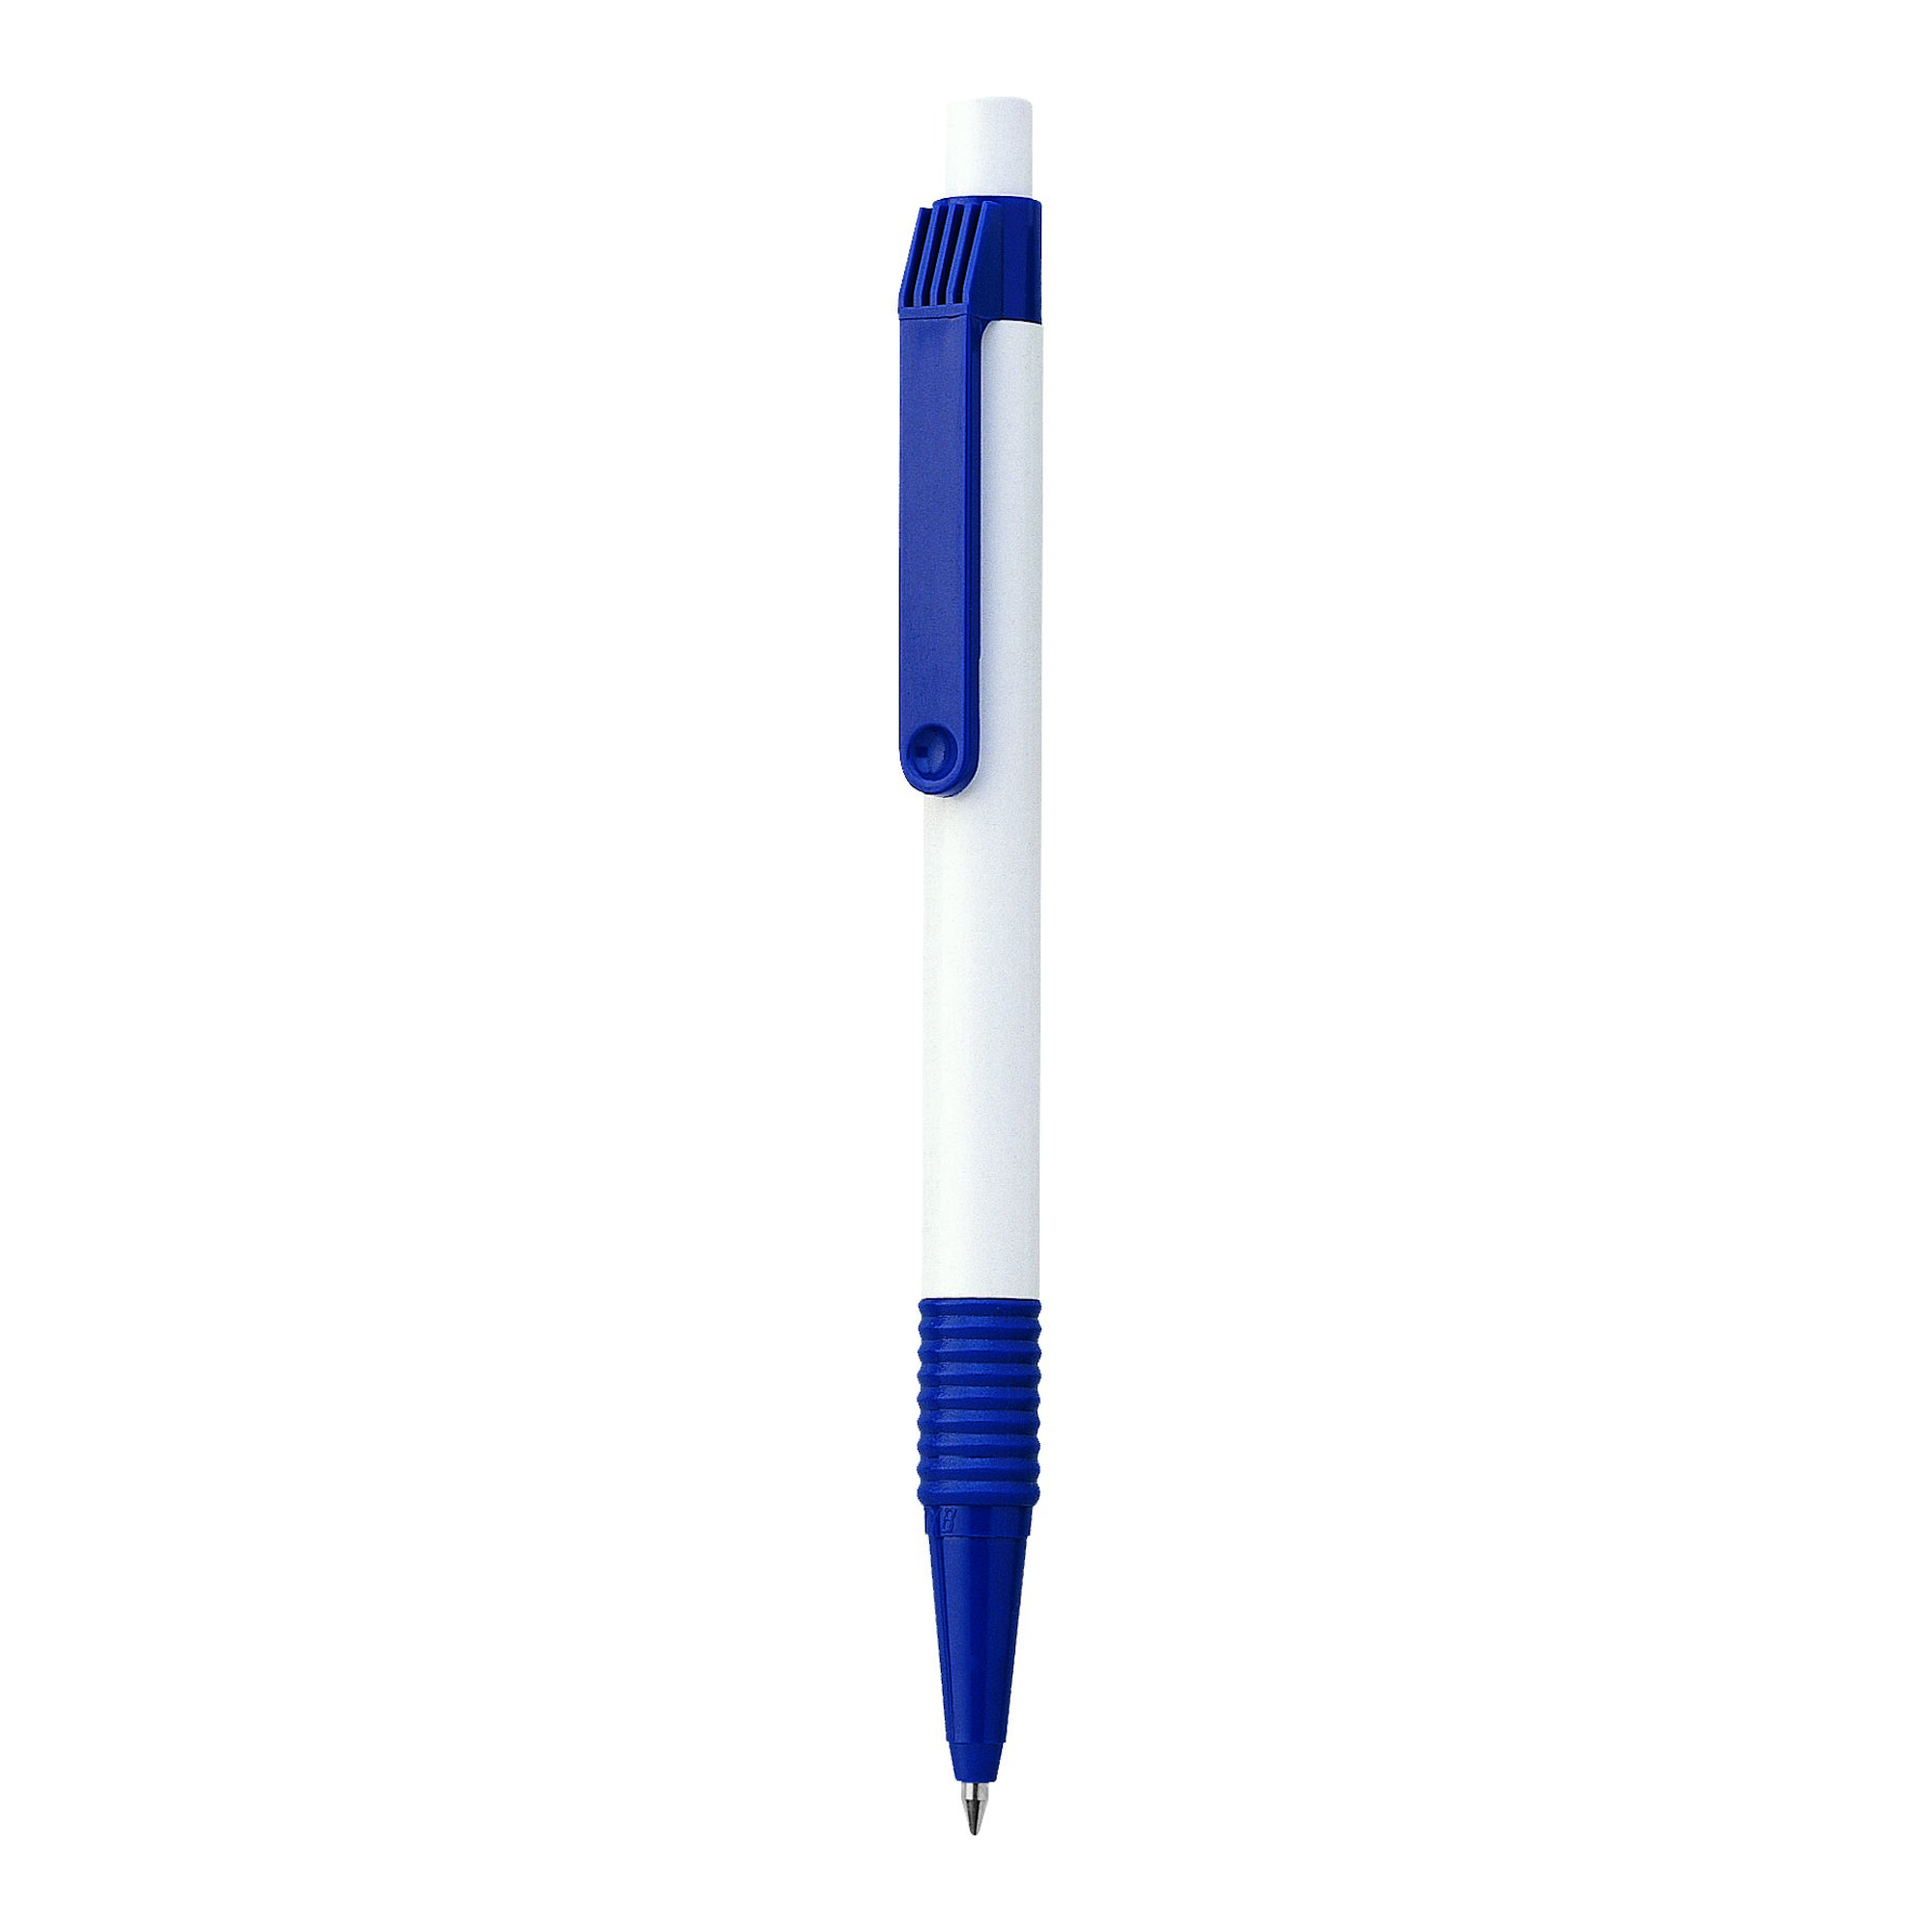 Bolígrafo Sport
Color azul y blanco